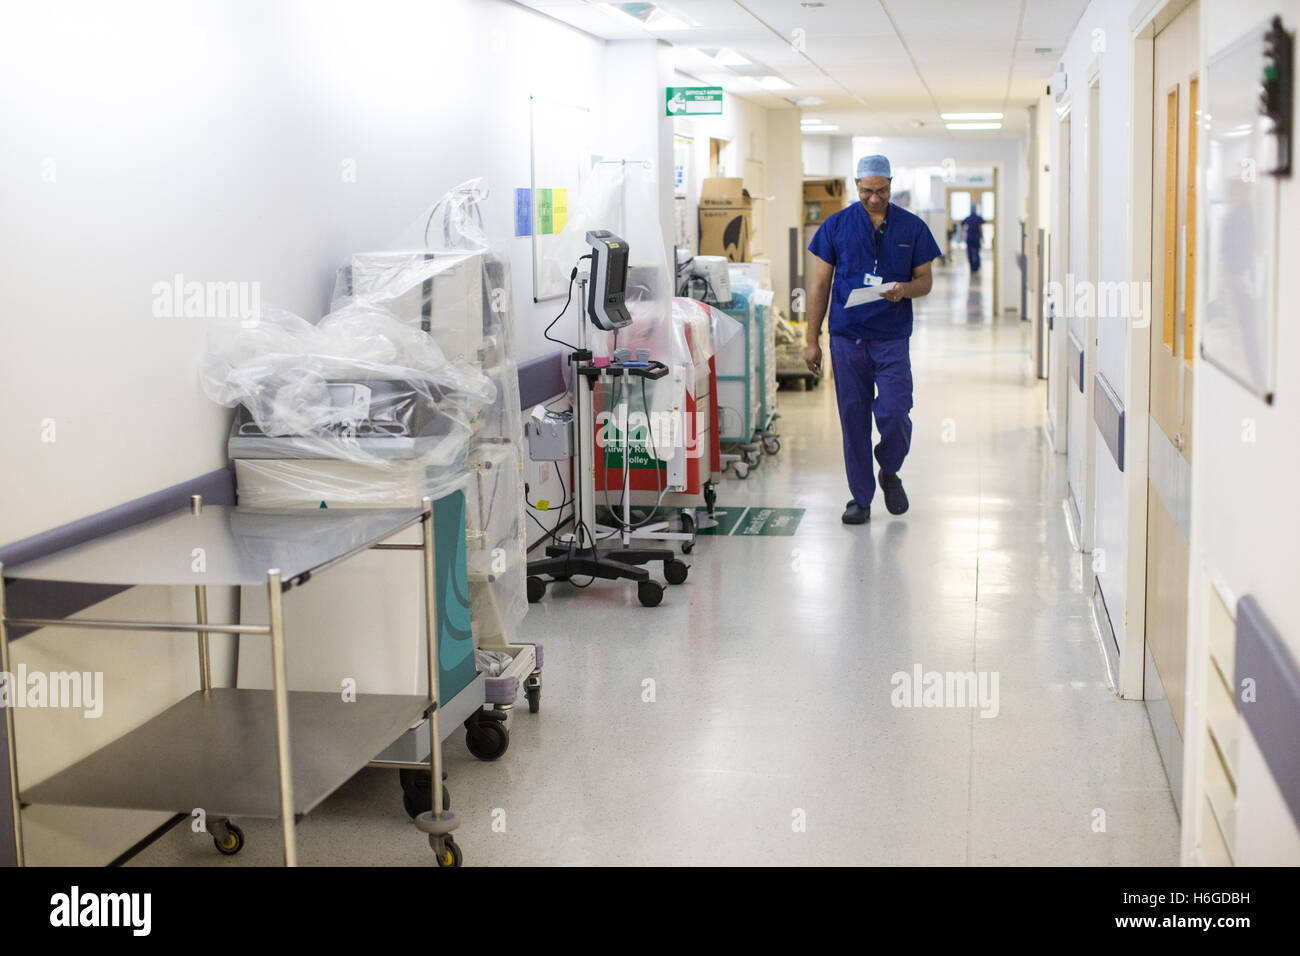 Un cirujano paseos a lo largo de un corredor de hospital NHS vistiendo scrubs Foto de stock